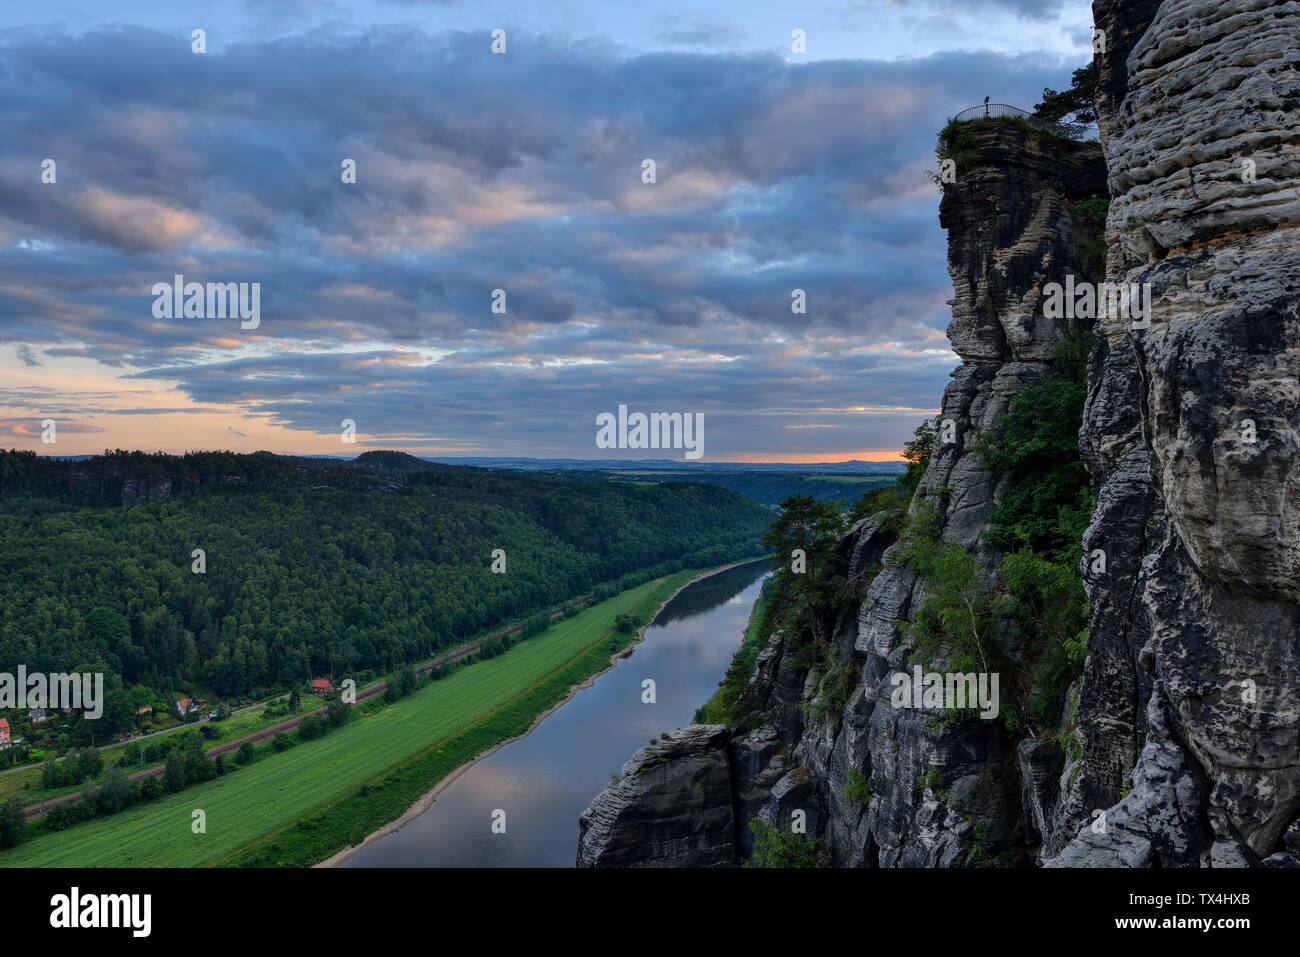 Deutschland, Sachsen, Elbsandsteingebirge, Blick von der Bastei auf die Elbe und Elbtal bei Dämmerung Stockfoto